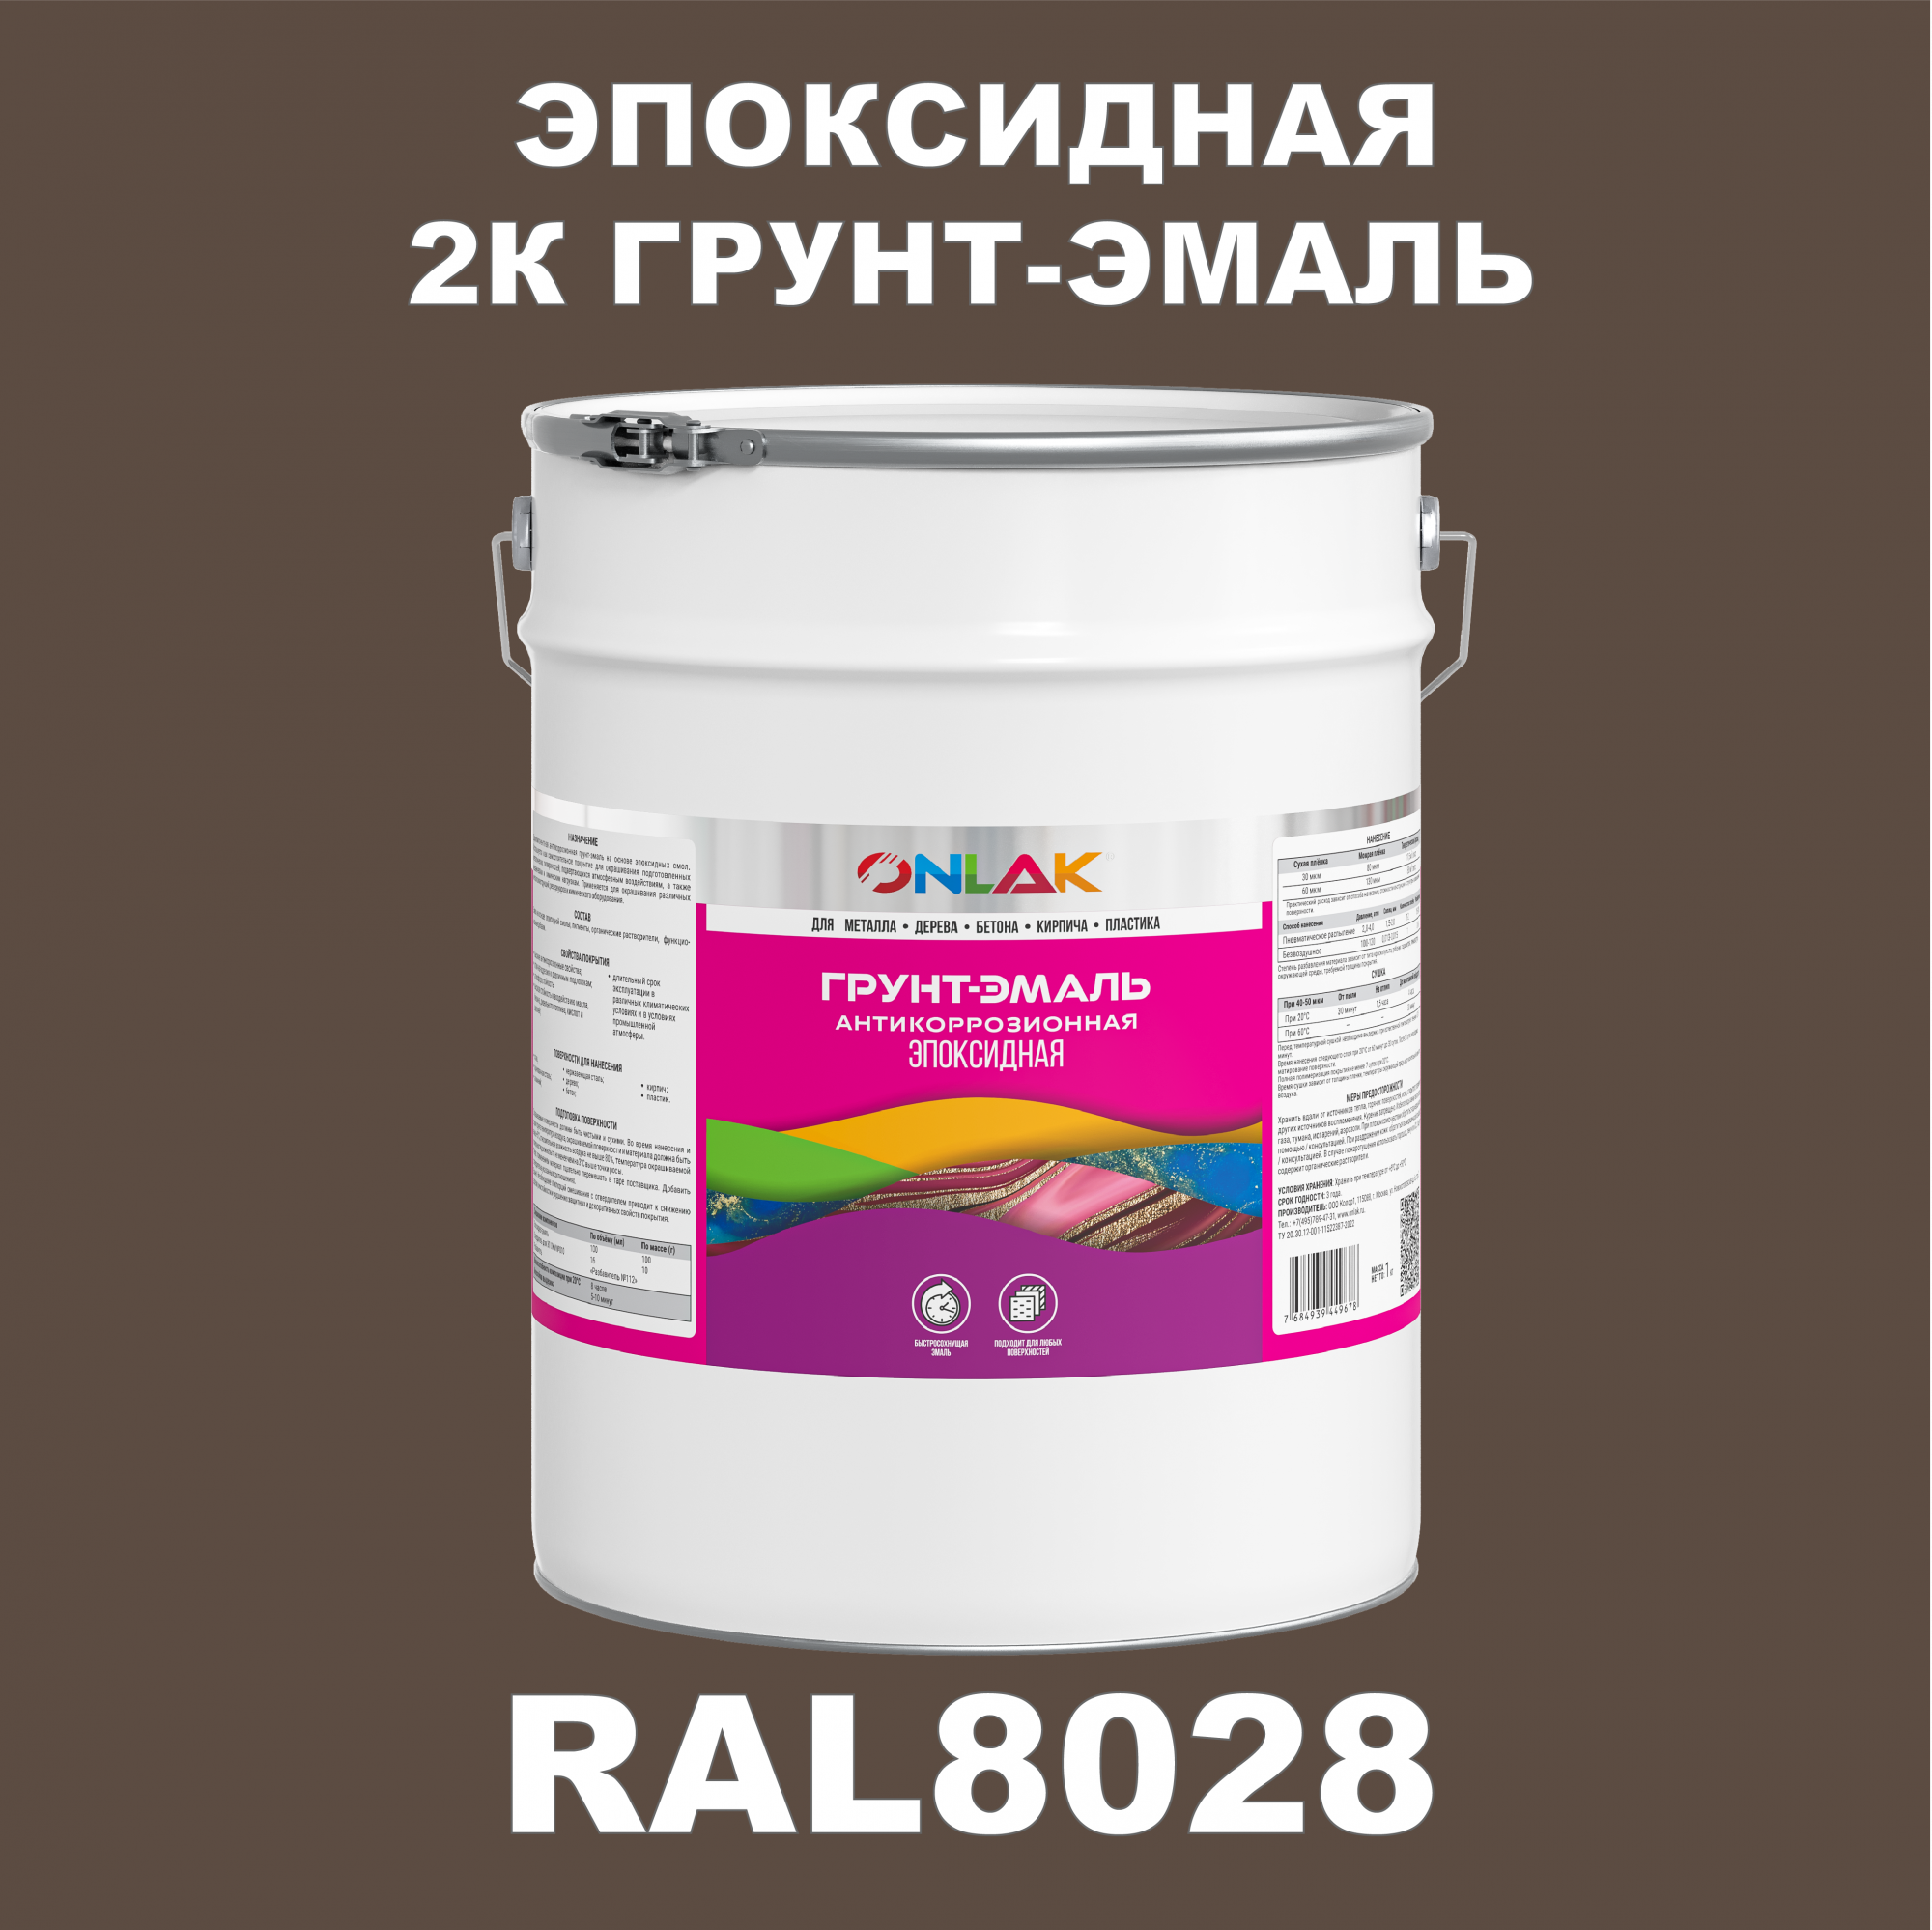 Грунт-эмаль ONLAK Эпоксидная 2К RAL8028 по металлу, ржавчине, дереву, бетону